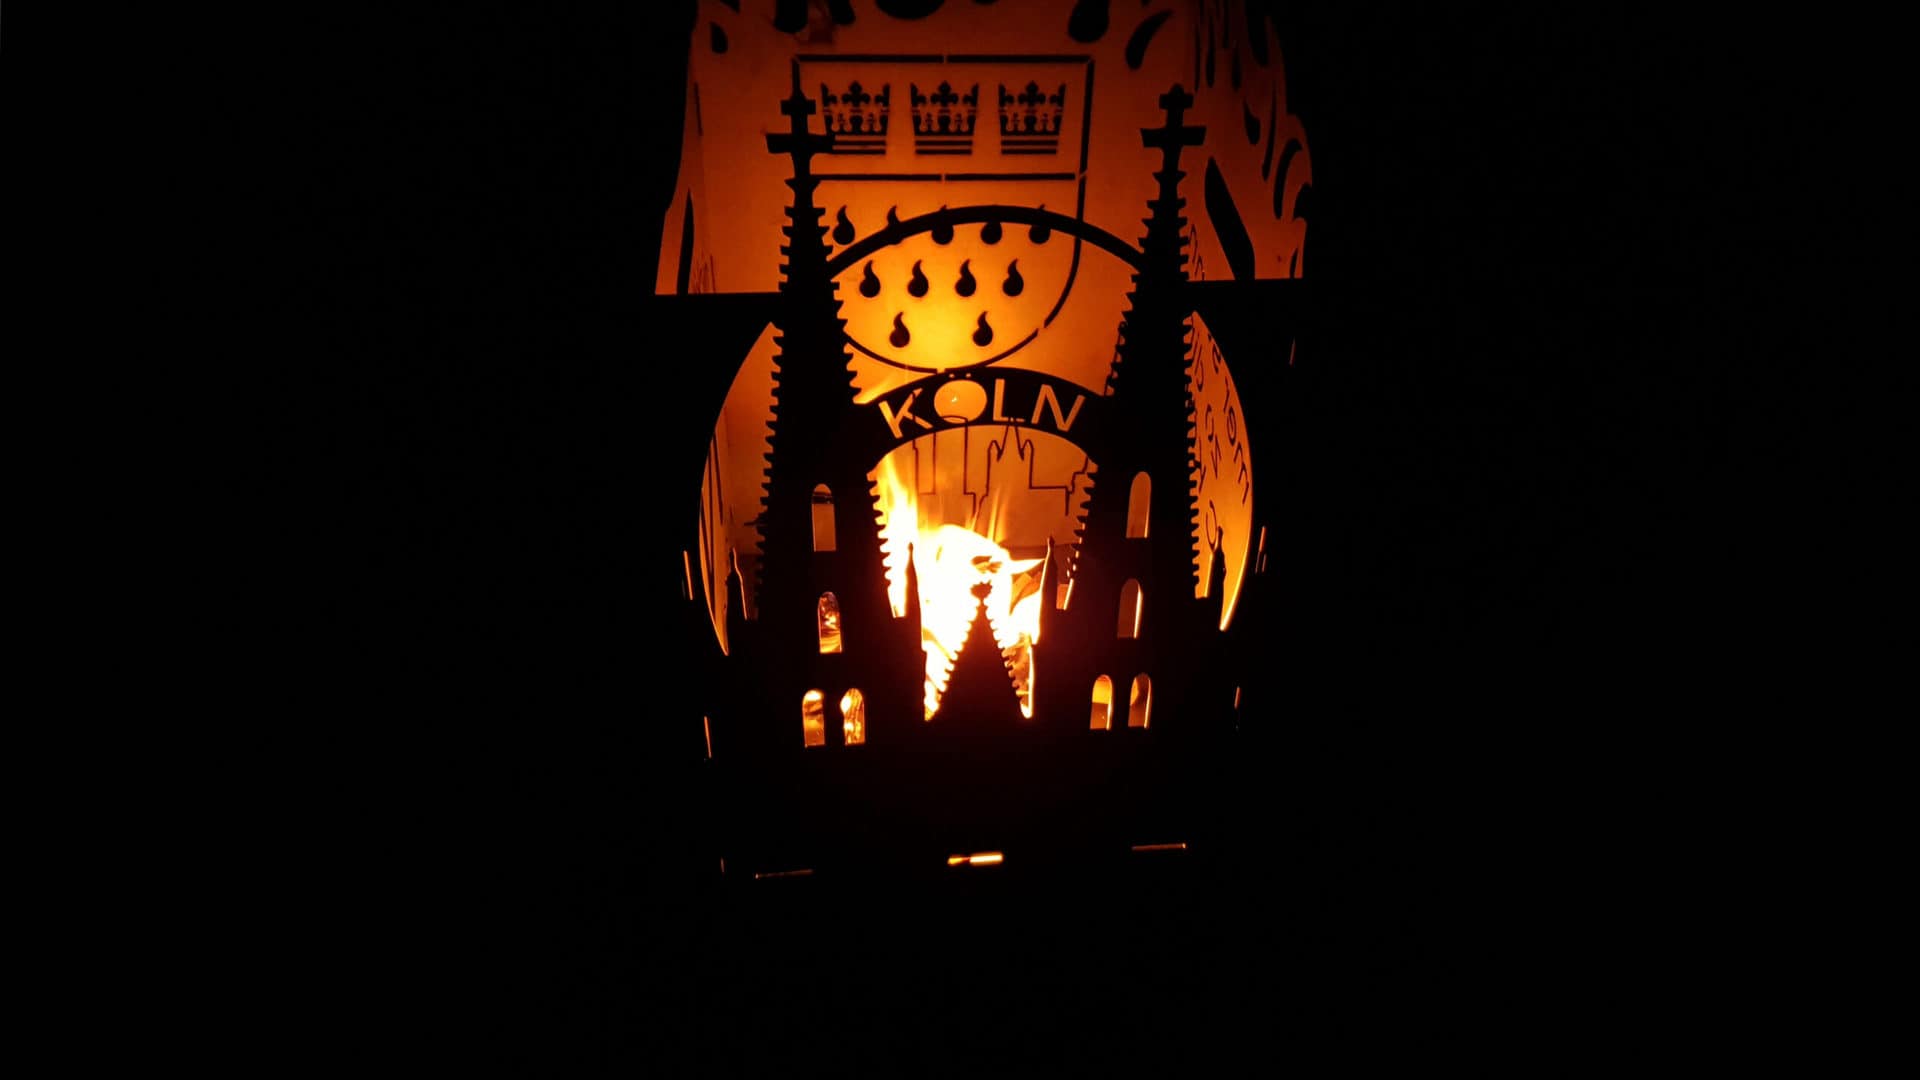 Der brennende Feuerkorb, zu sehen der Kölner Dom